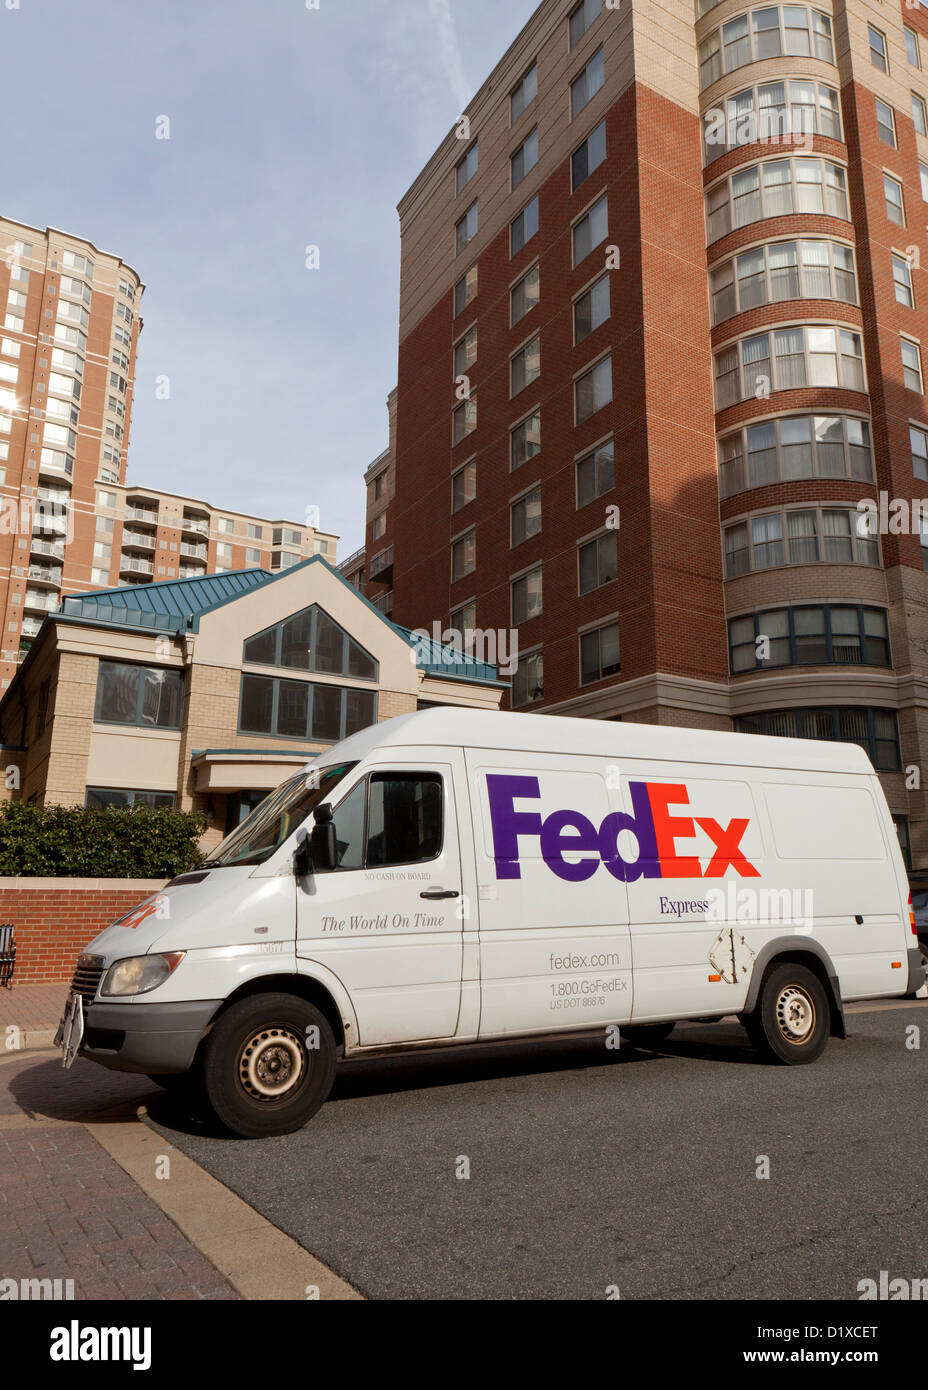 Livraison FedEx van garée en face de l'appartement immeuble - Arlington, Virginia, USA Banque D'Images